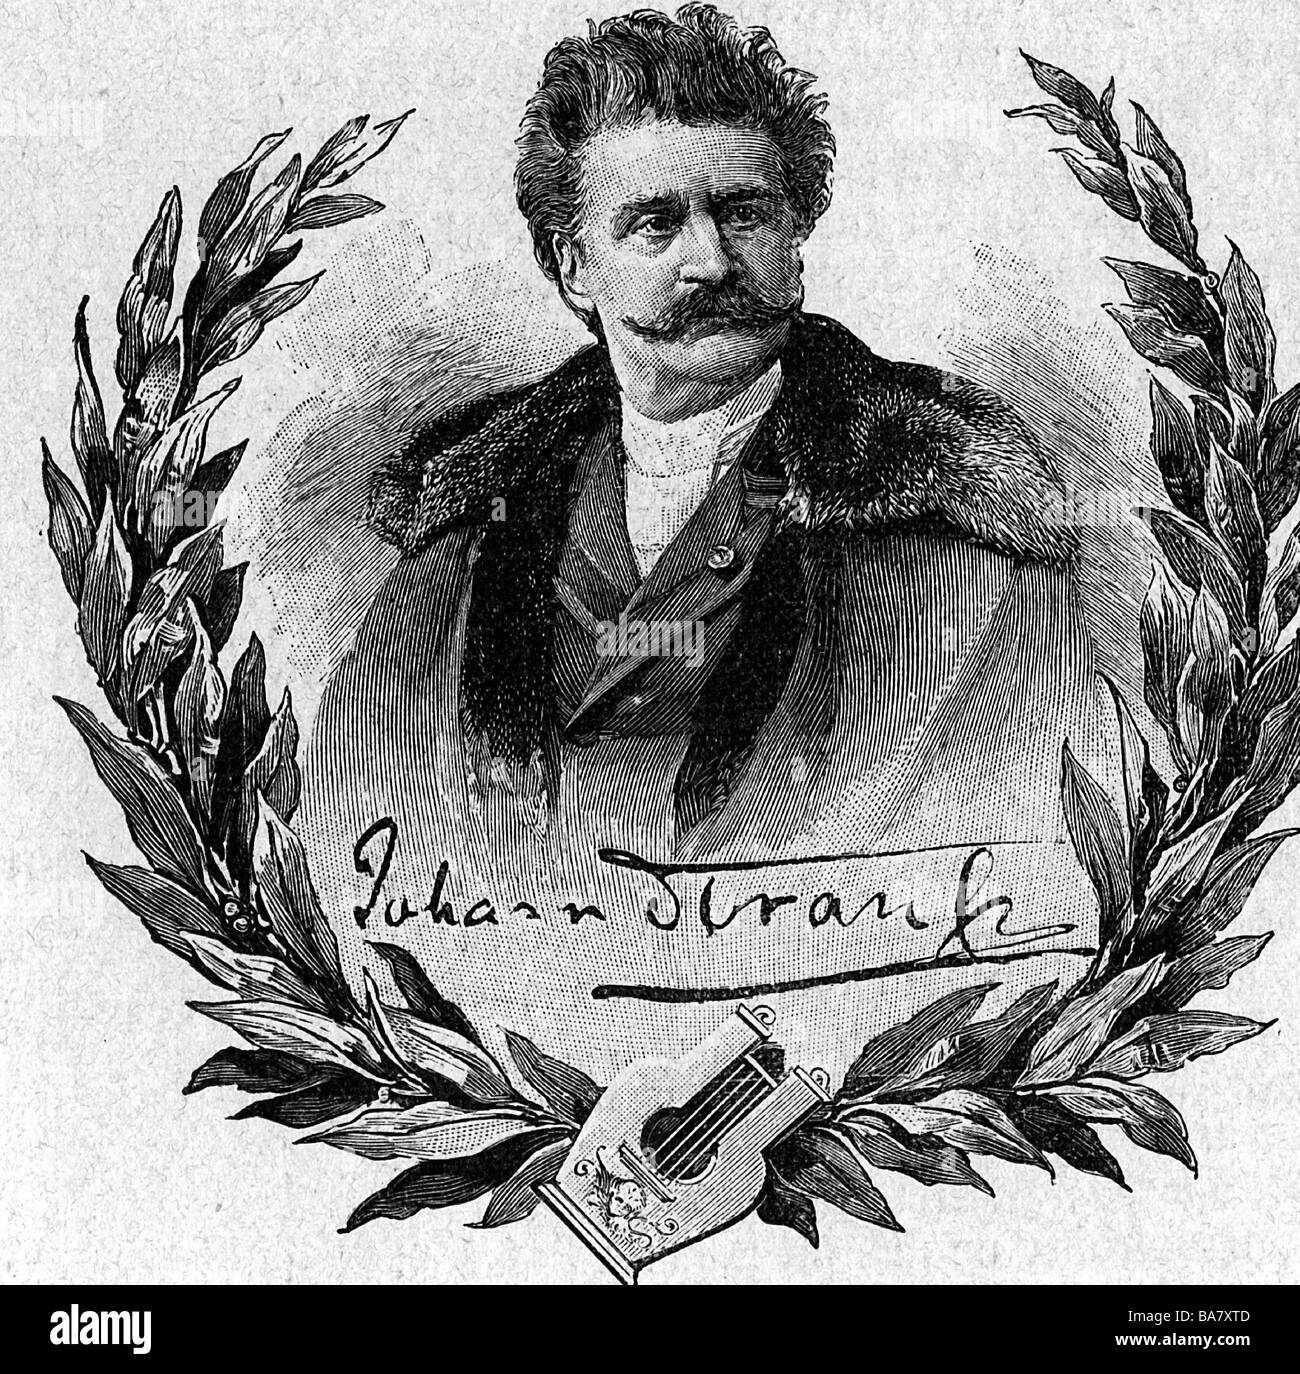 Strauß, Johann II. (Der Jüngere), 25.10.1825 - 3.6.1899, österreichischer Komponist, Porträt, mit Lorbeerkranz, Holzgravur, Ende 19. Jahrhundert, Stockfoto